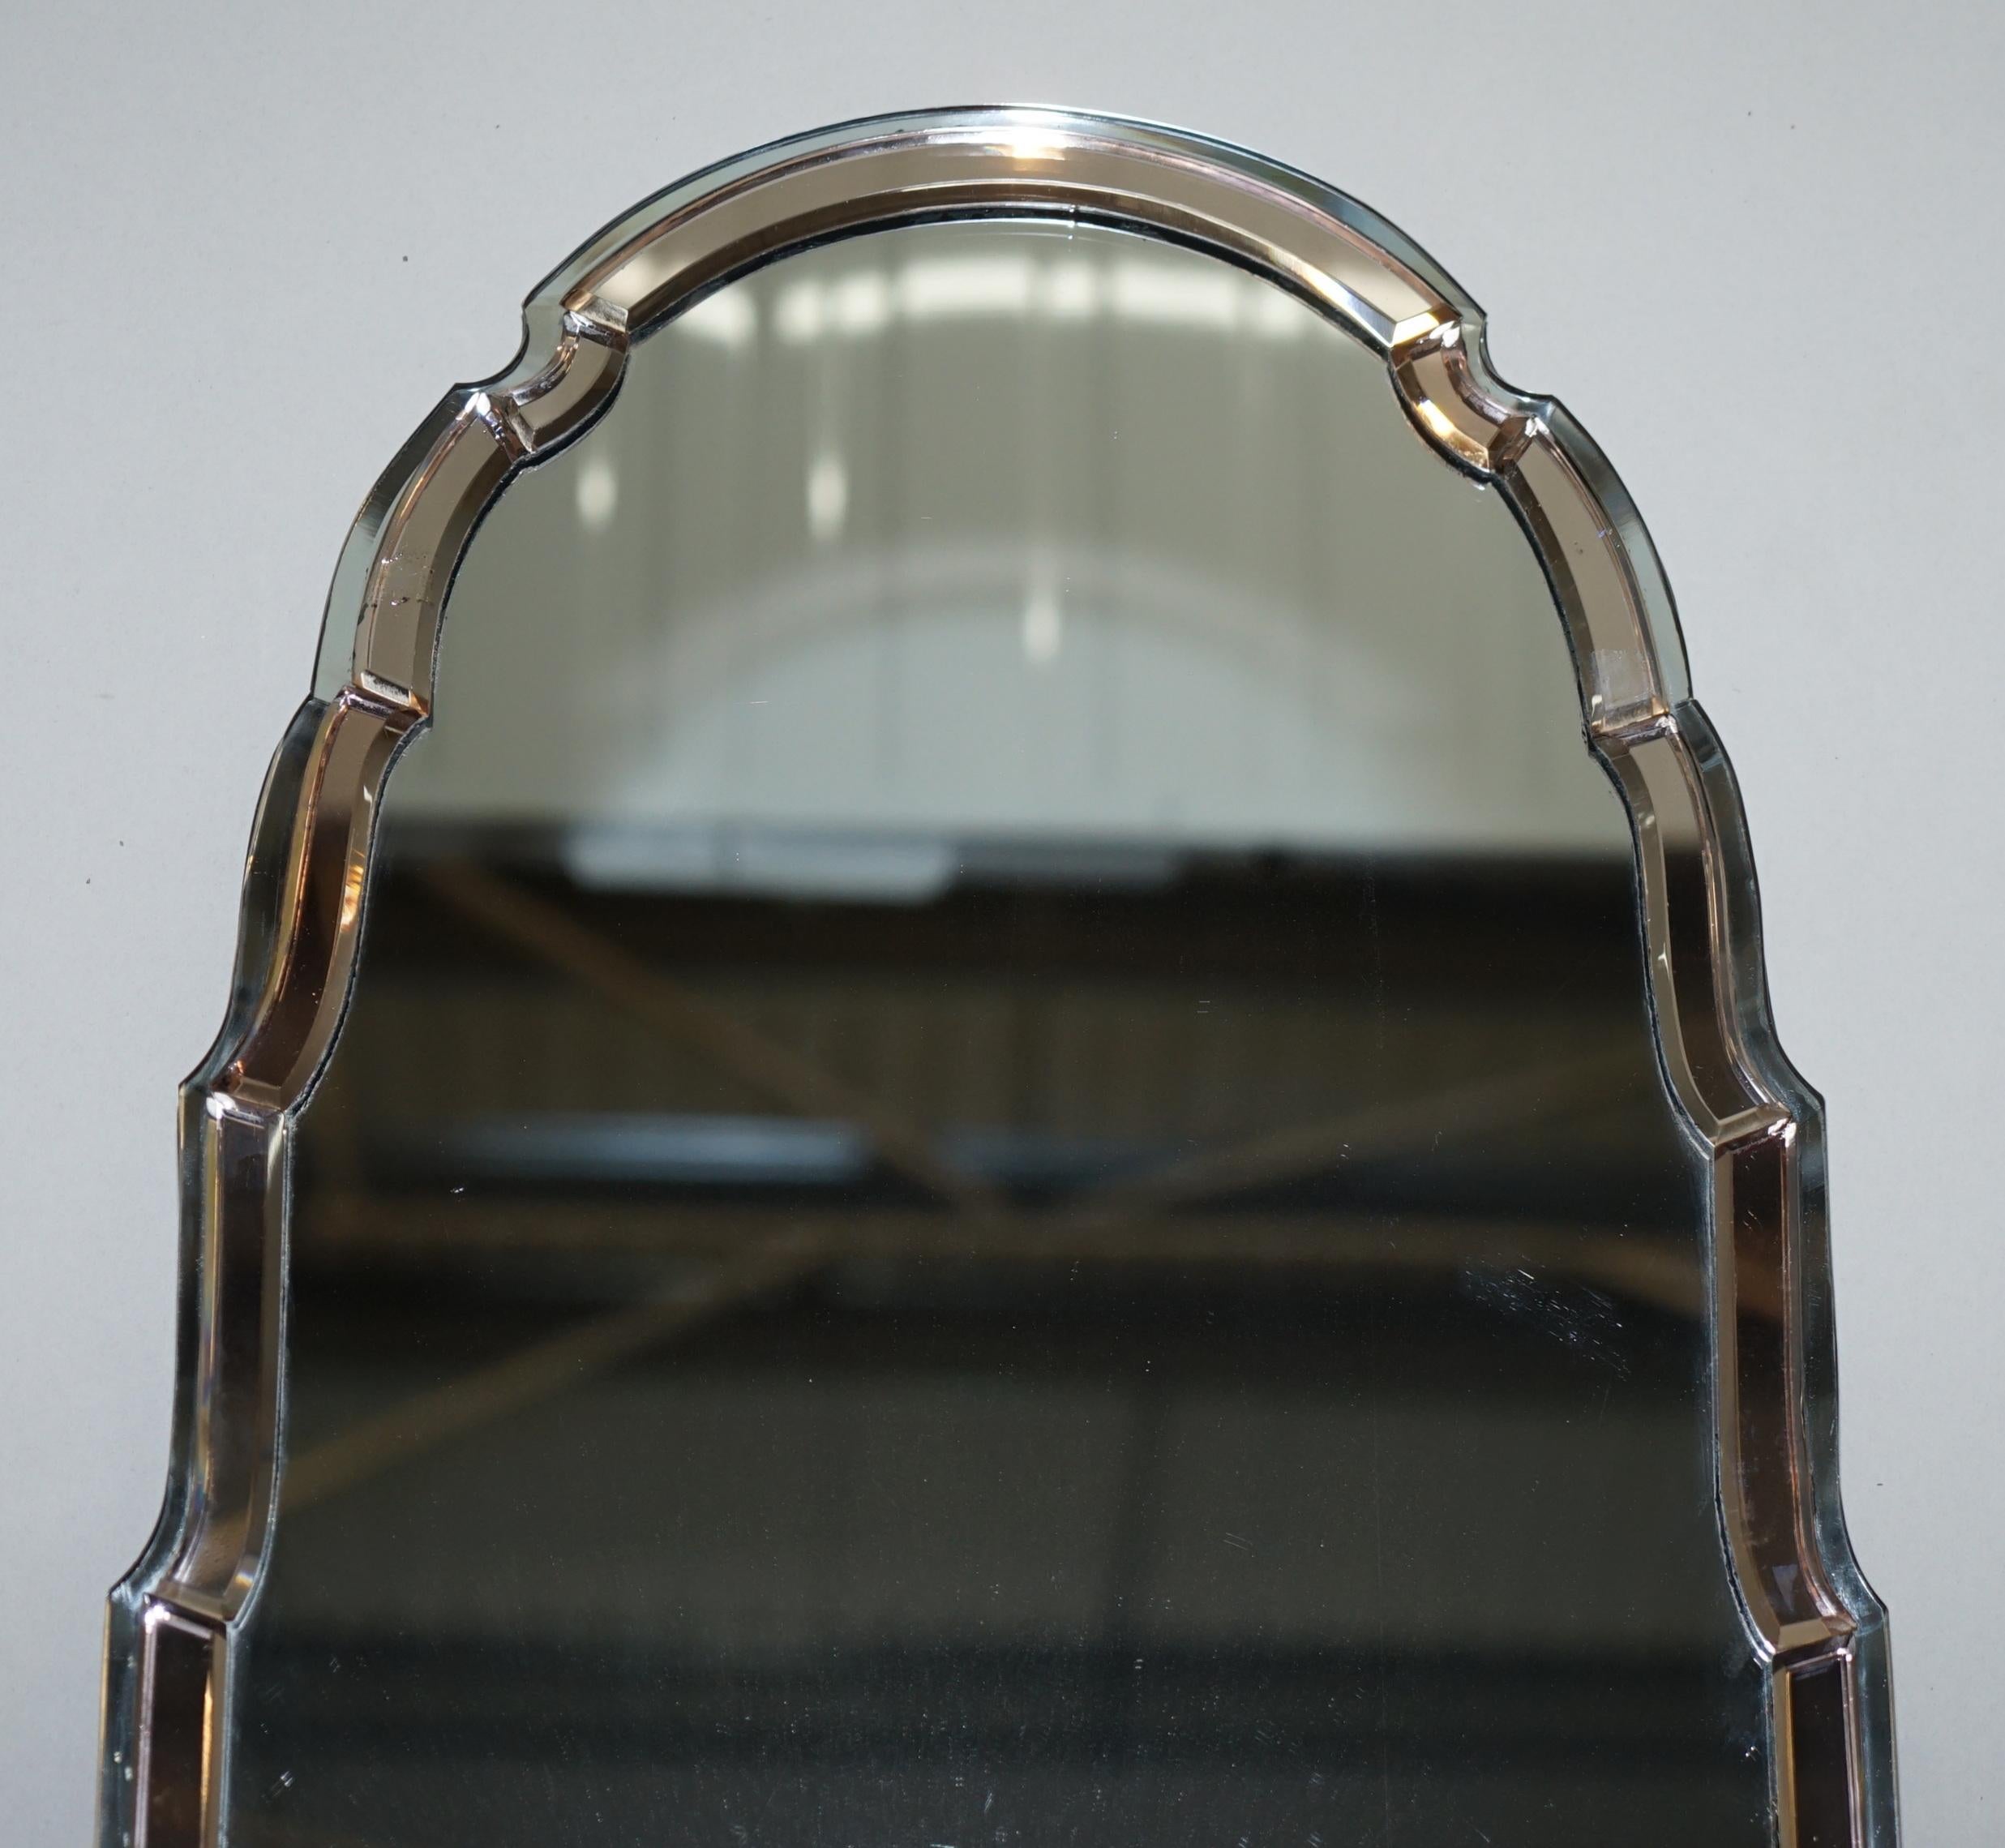 Nous sommes ravis d'offrir à la vente ce superbe et exceptionnellement rare miroir vénitien en verre pêche Art déco des années 1930, avec un cadre à bord biseauté et un sommet courbé en forme de clocher. 

Un très beau miroir mural bien fait et